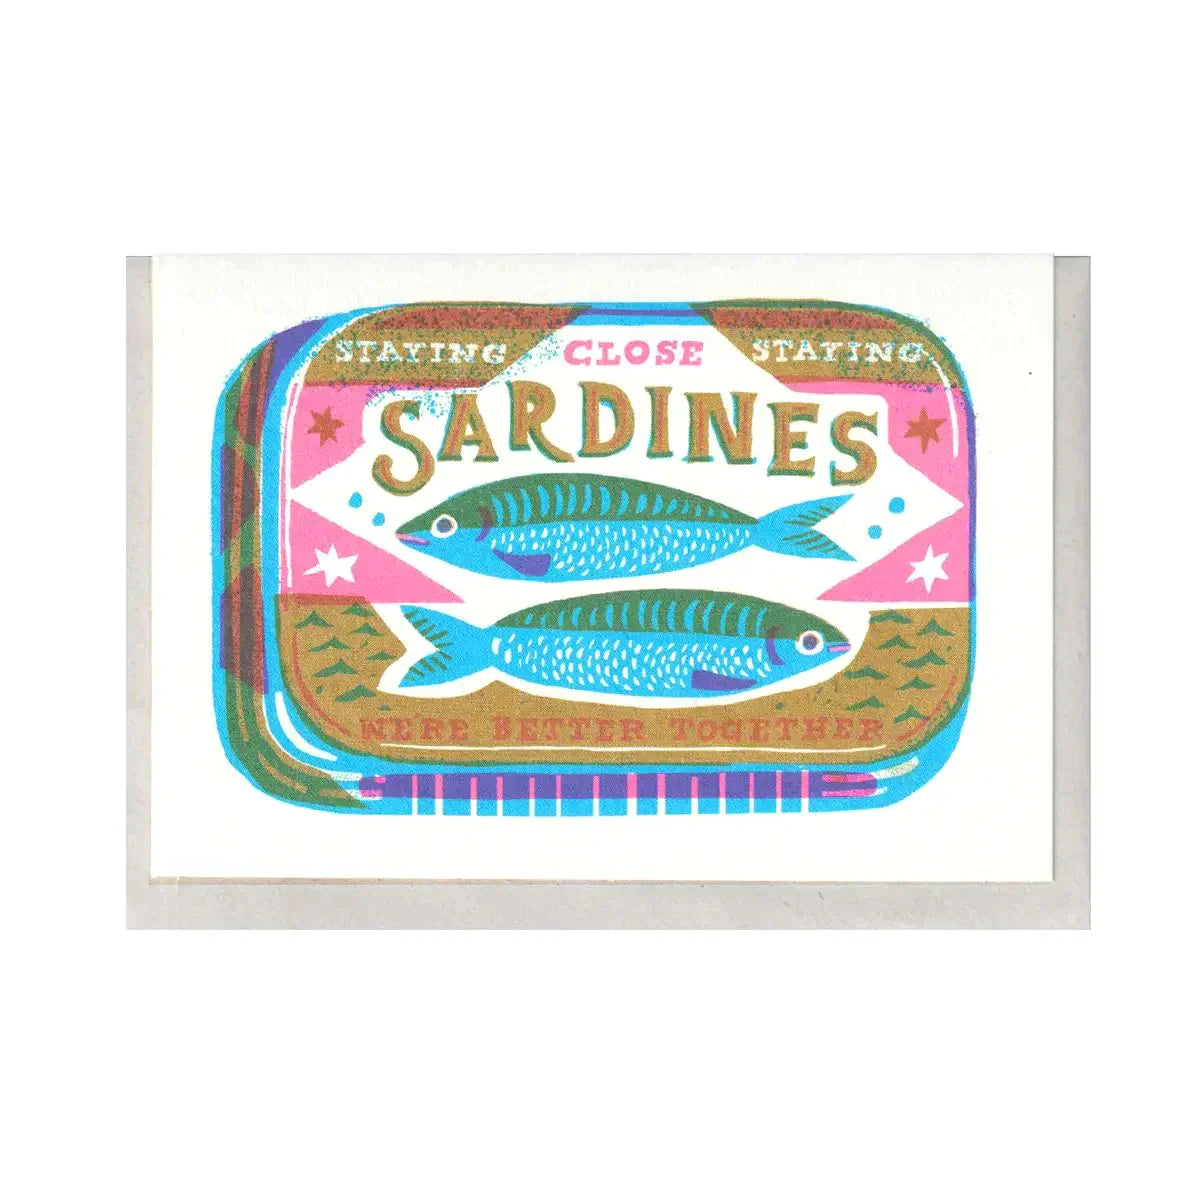 SARDINES CARD Club Palma 